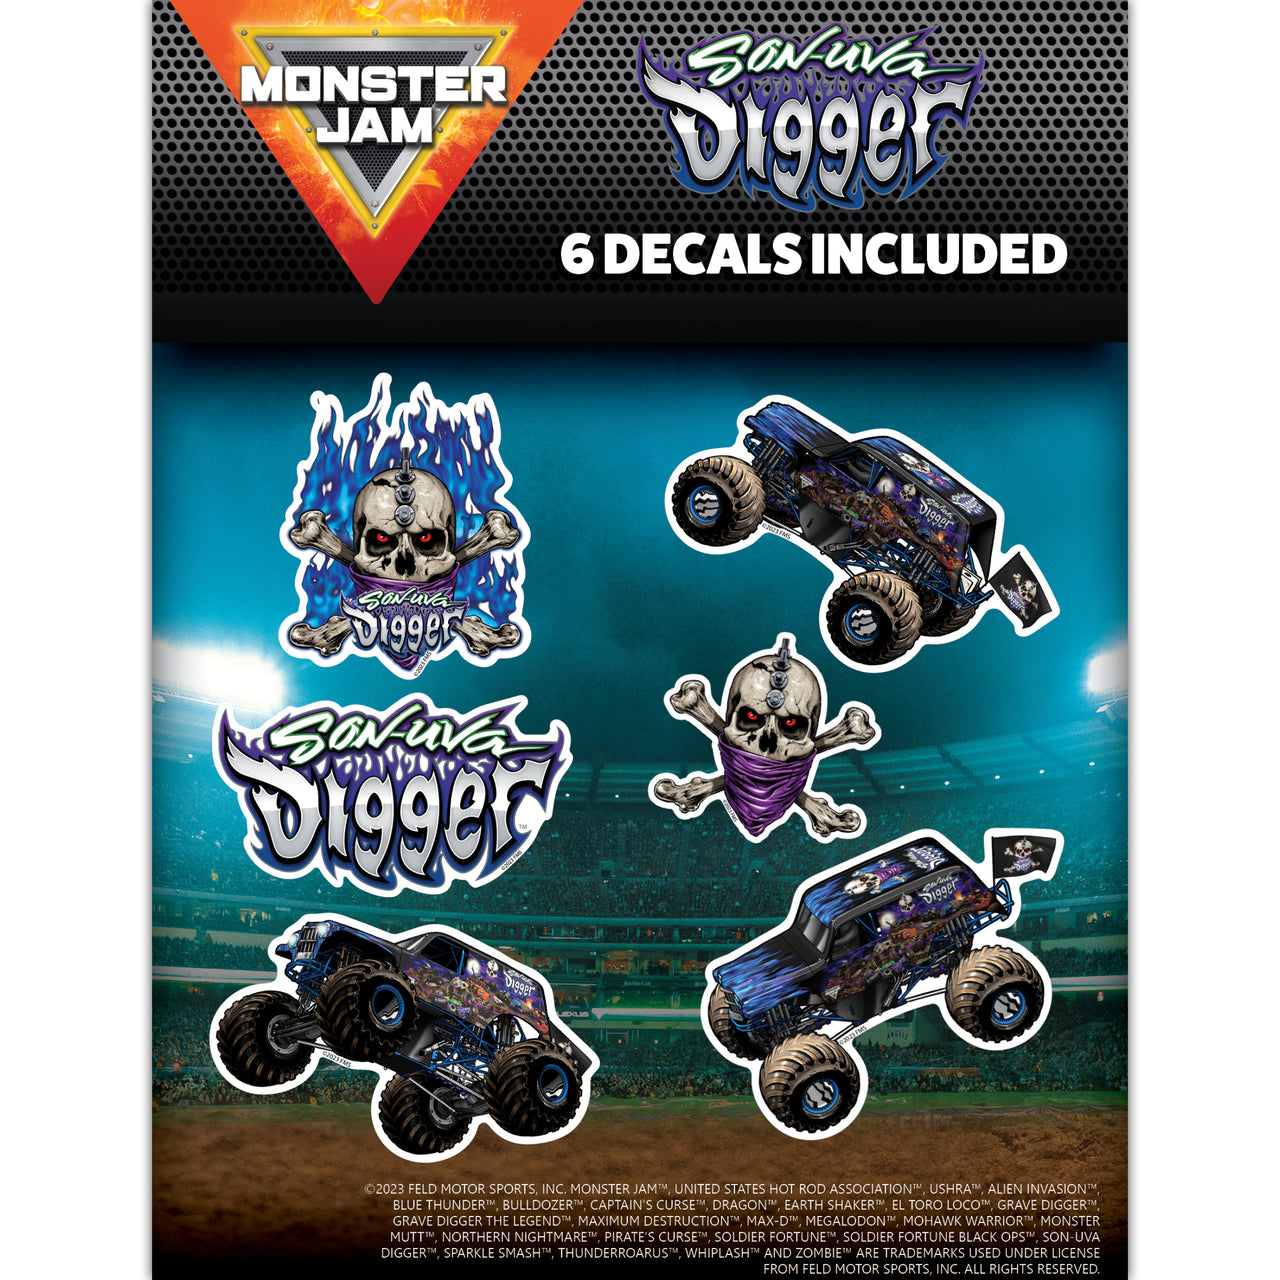 Monster Jam Son-Uva Digger Value Pack